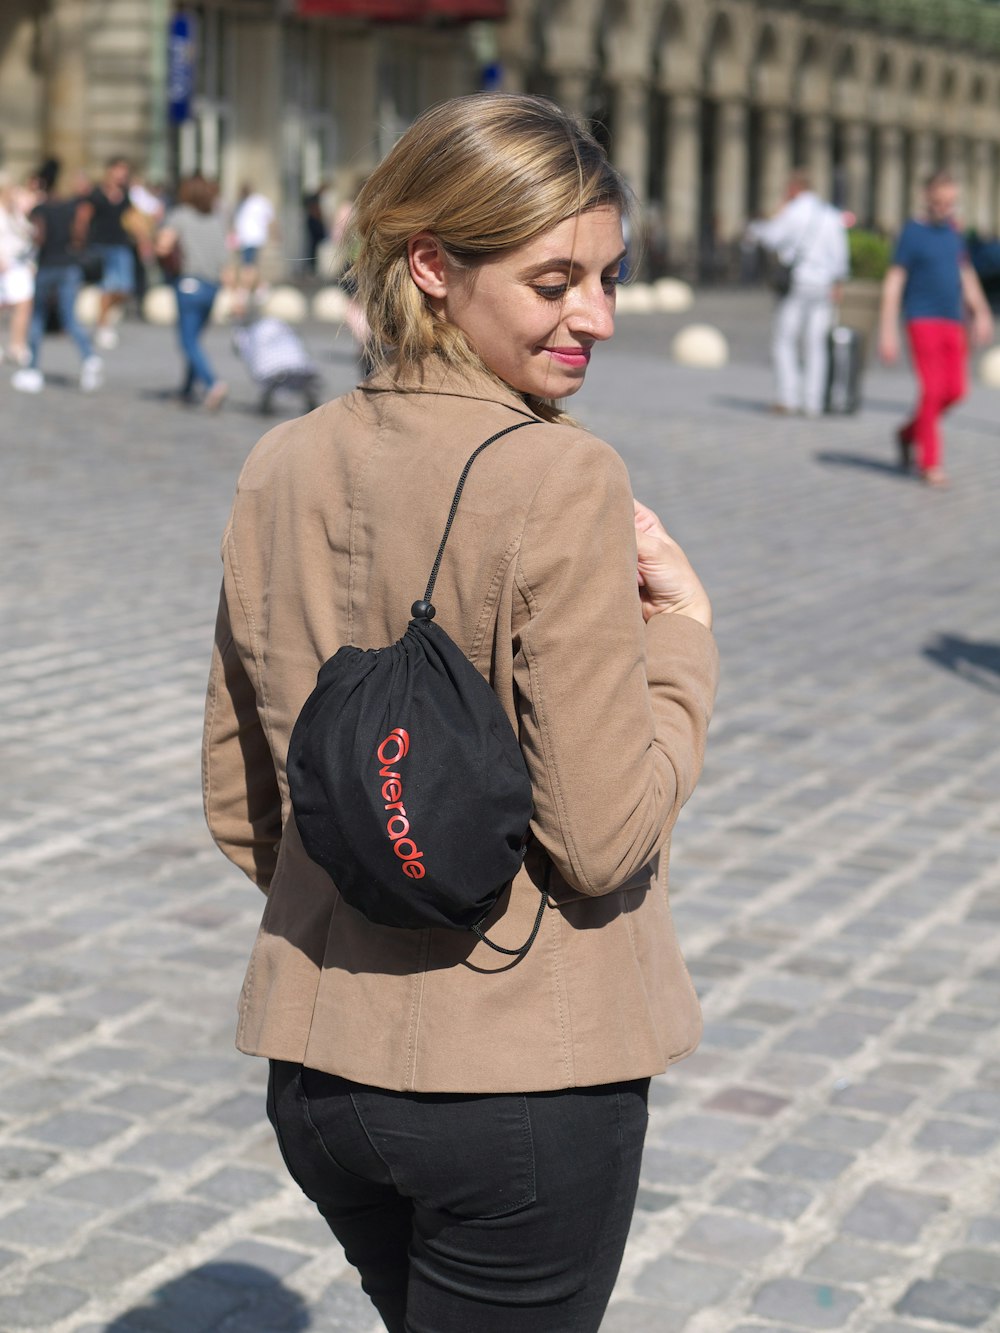 Une femme marchant dans une rue avec un sac à dos sur le dos